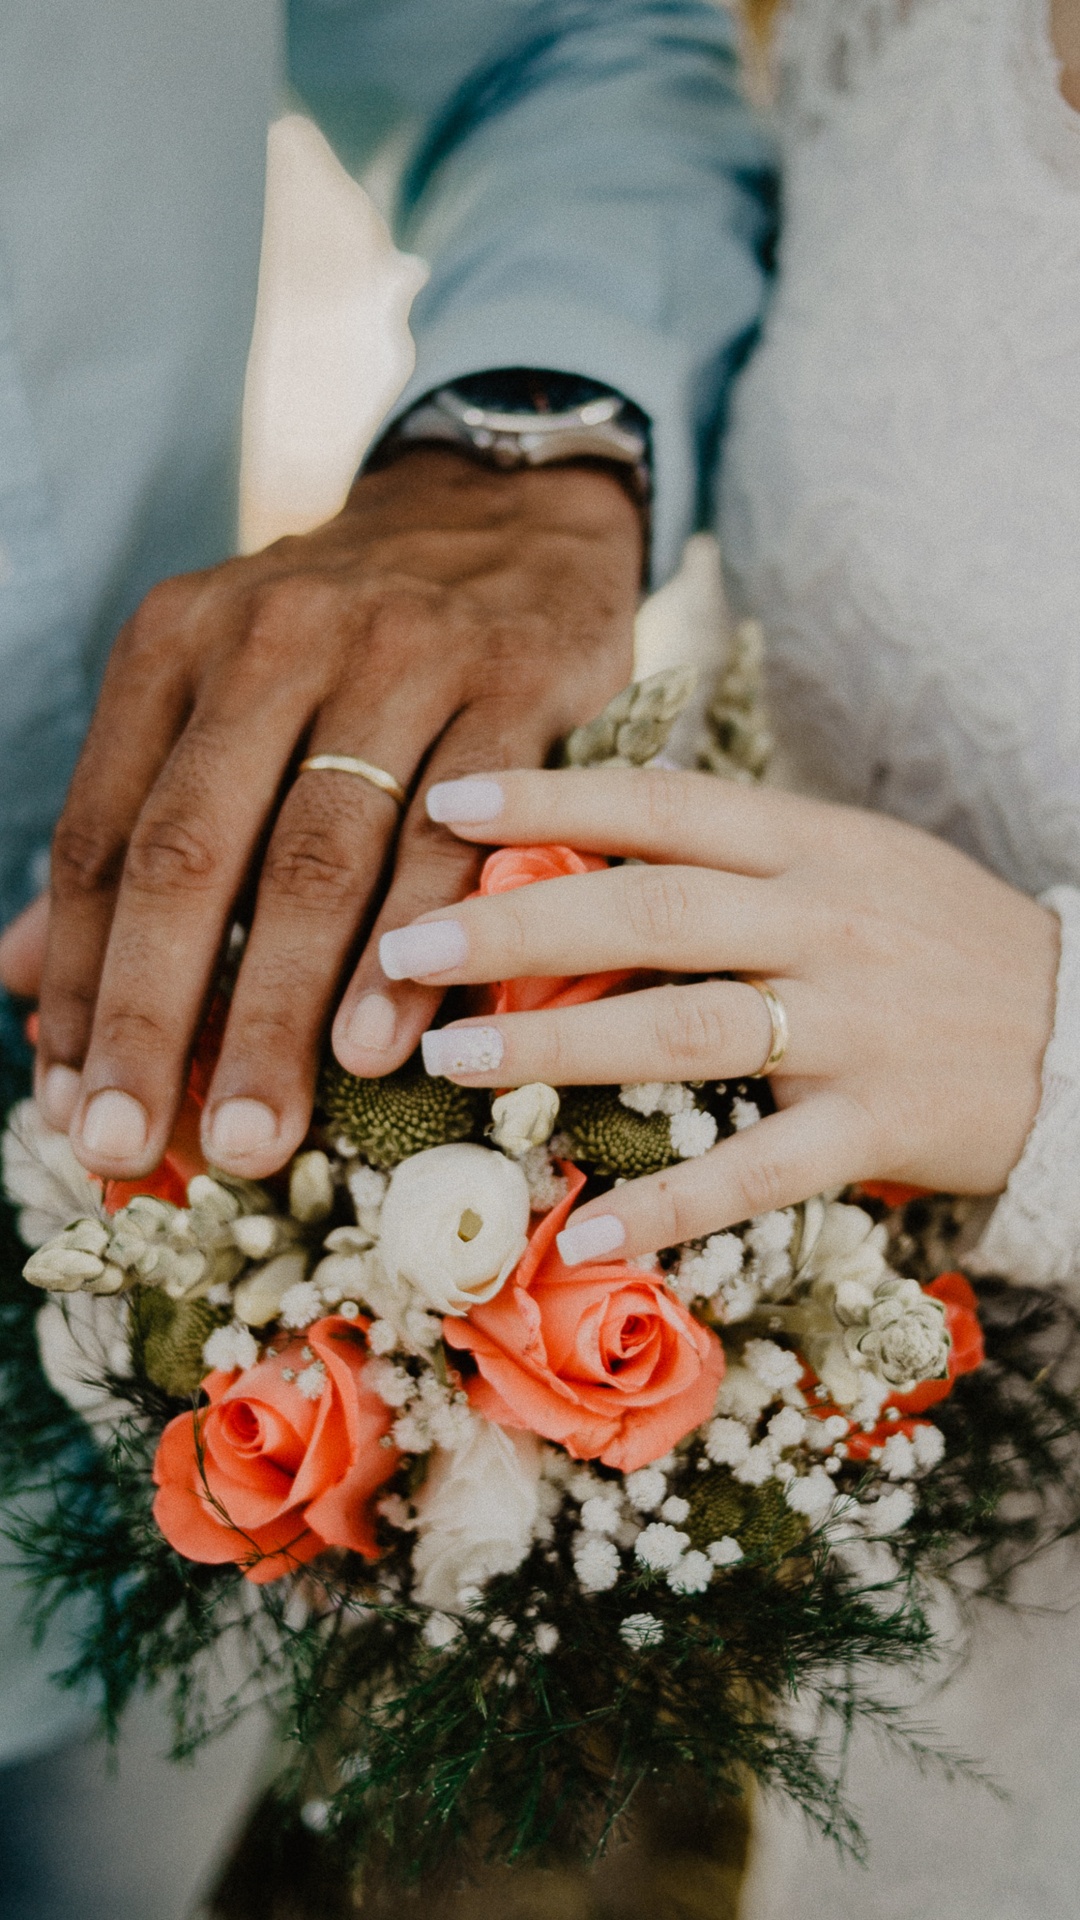 结婚戒指, 的婚礼仪式供应, 手, 婚礼礼服, 手臂 壁纸 1080x1920 允许